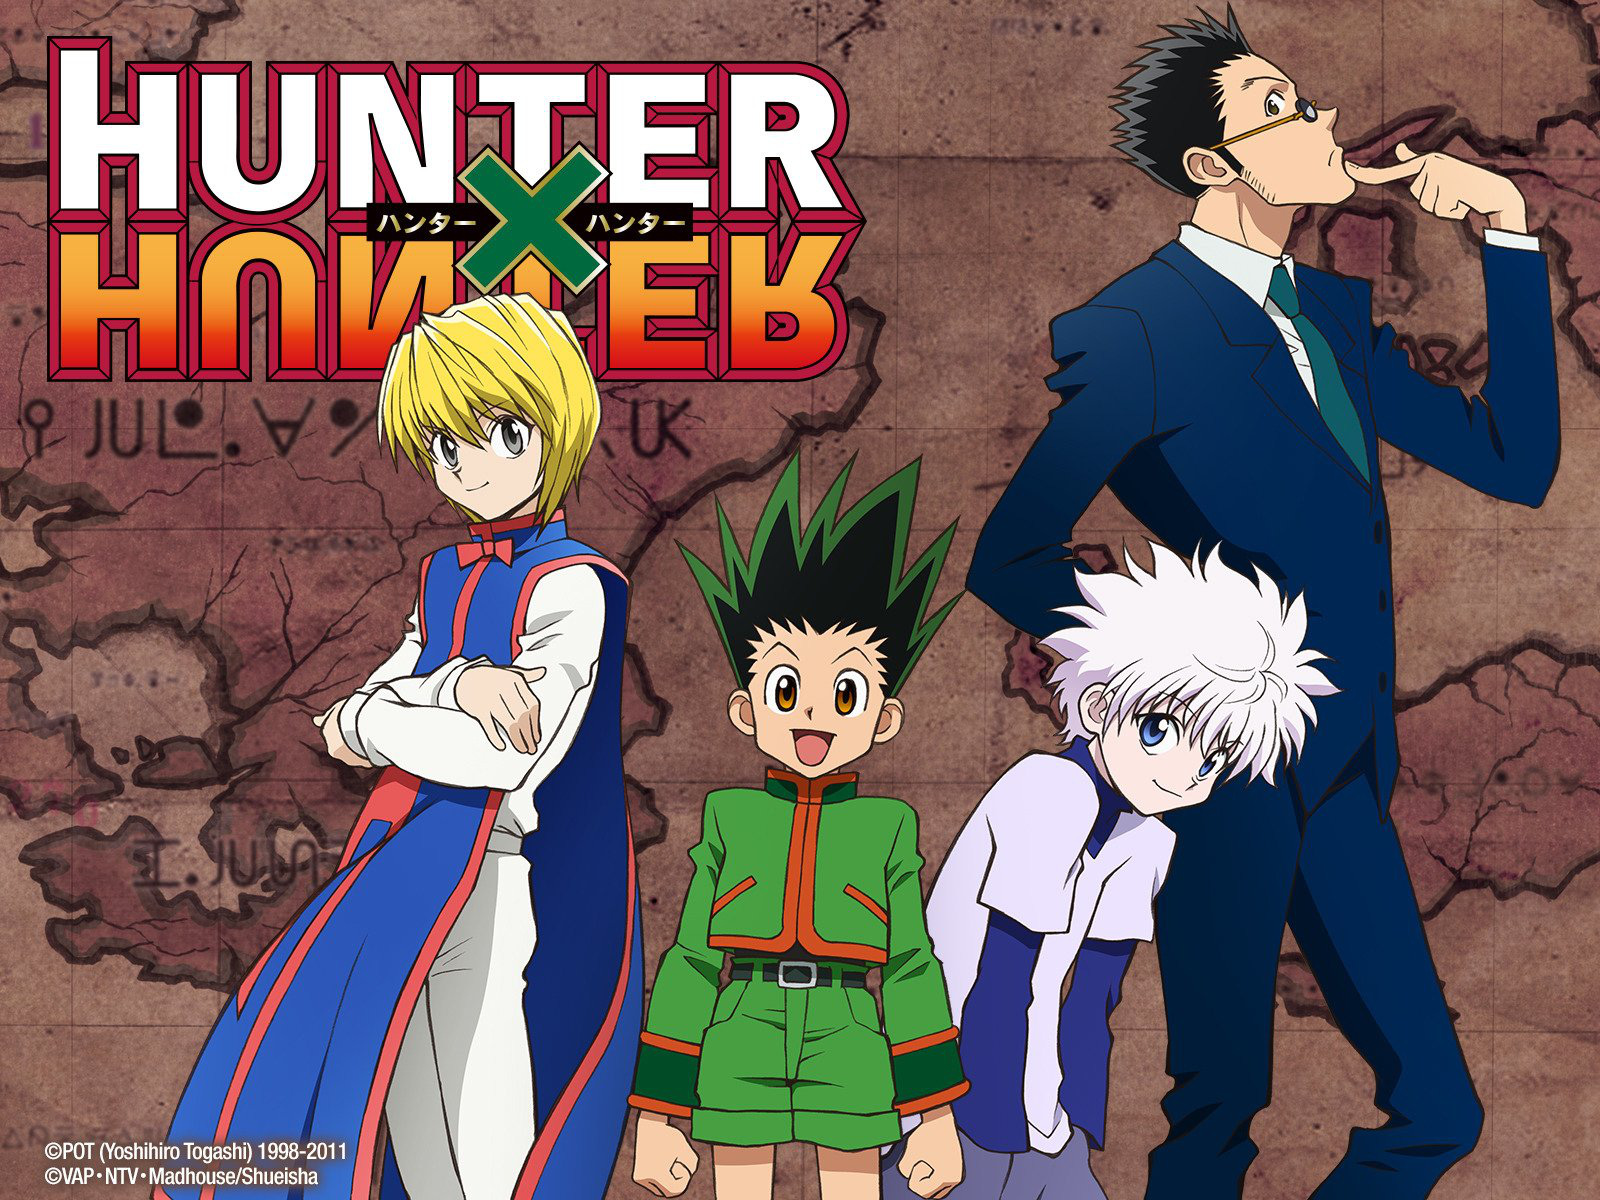 Kurapika Anime Hunter x Hunter Xmas Ugly Christmas Sweater Gift